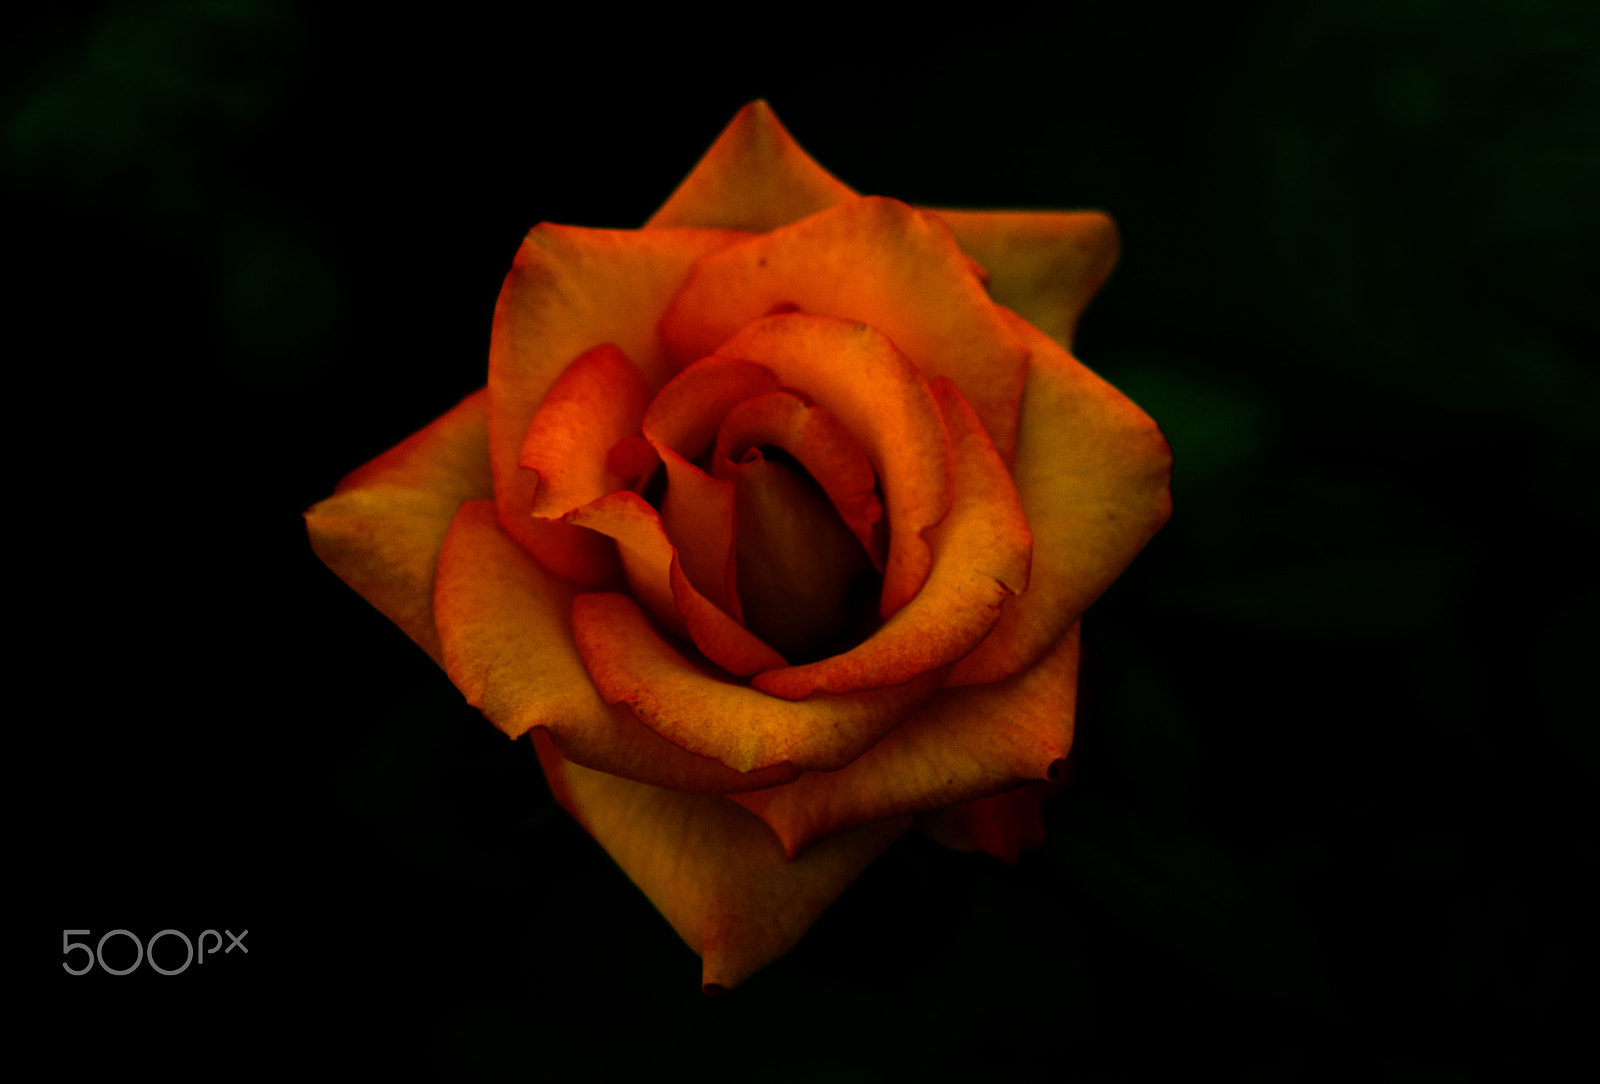 Nikon D90 sample photo. Graceful rose photography